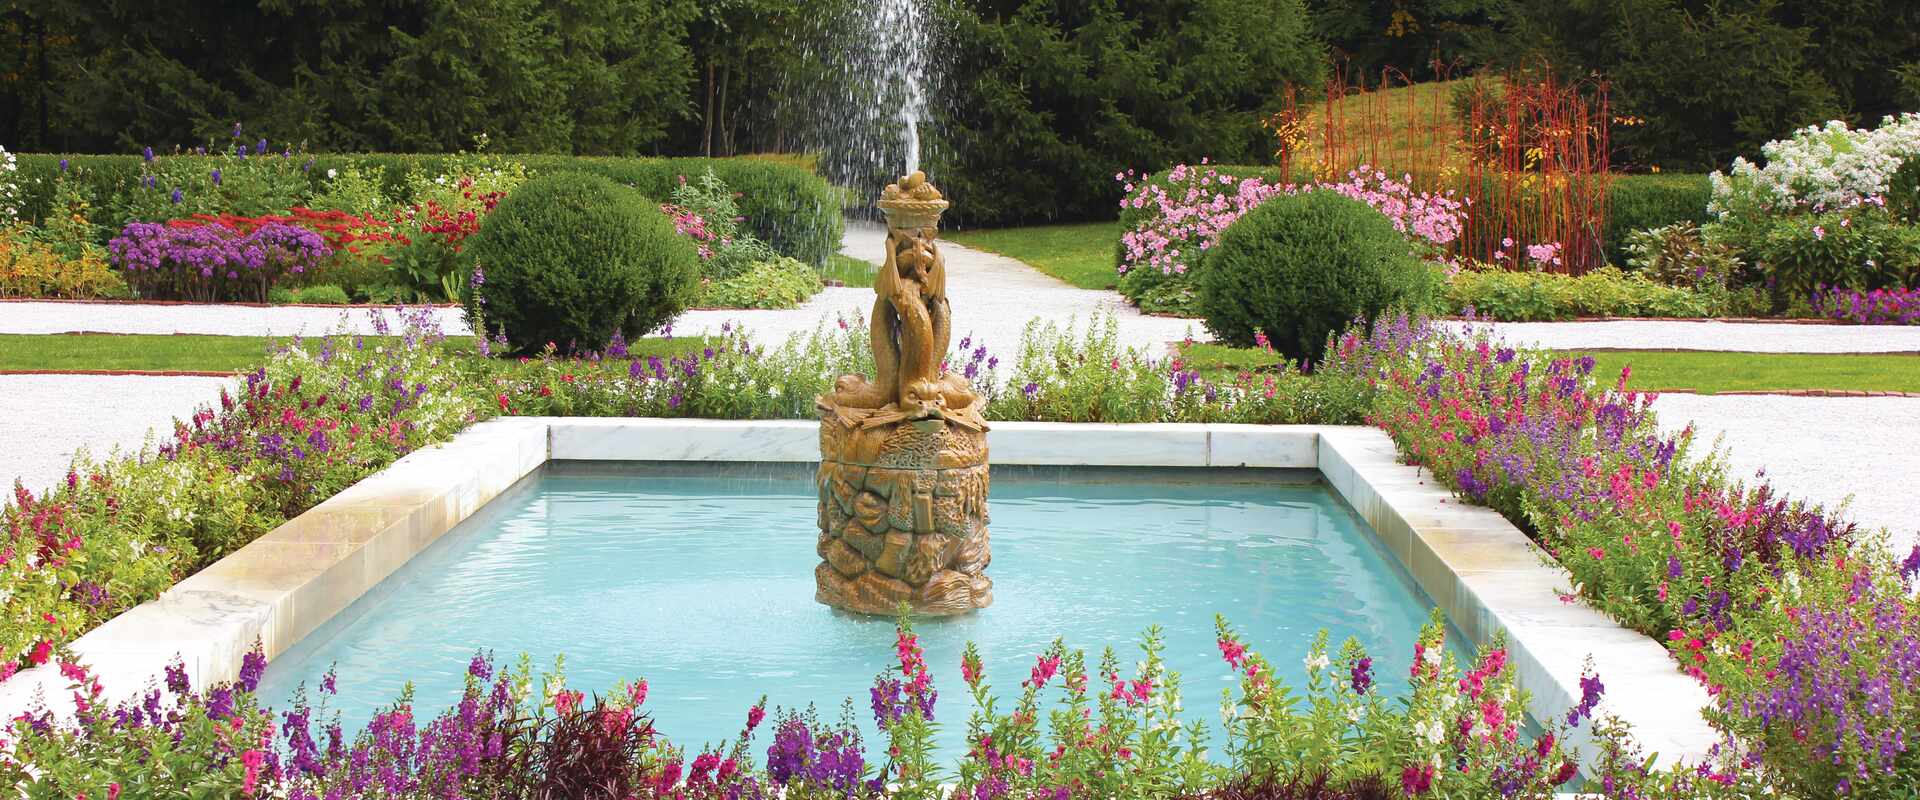 Image of USA The Mount garden fountain